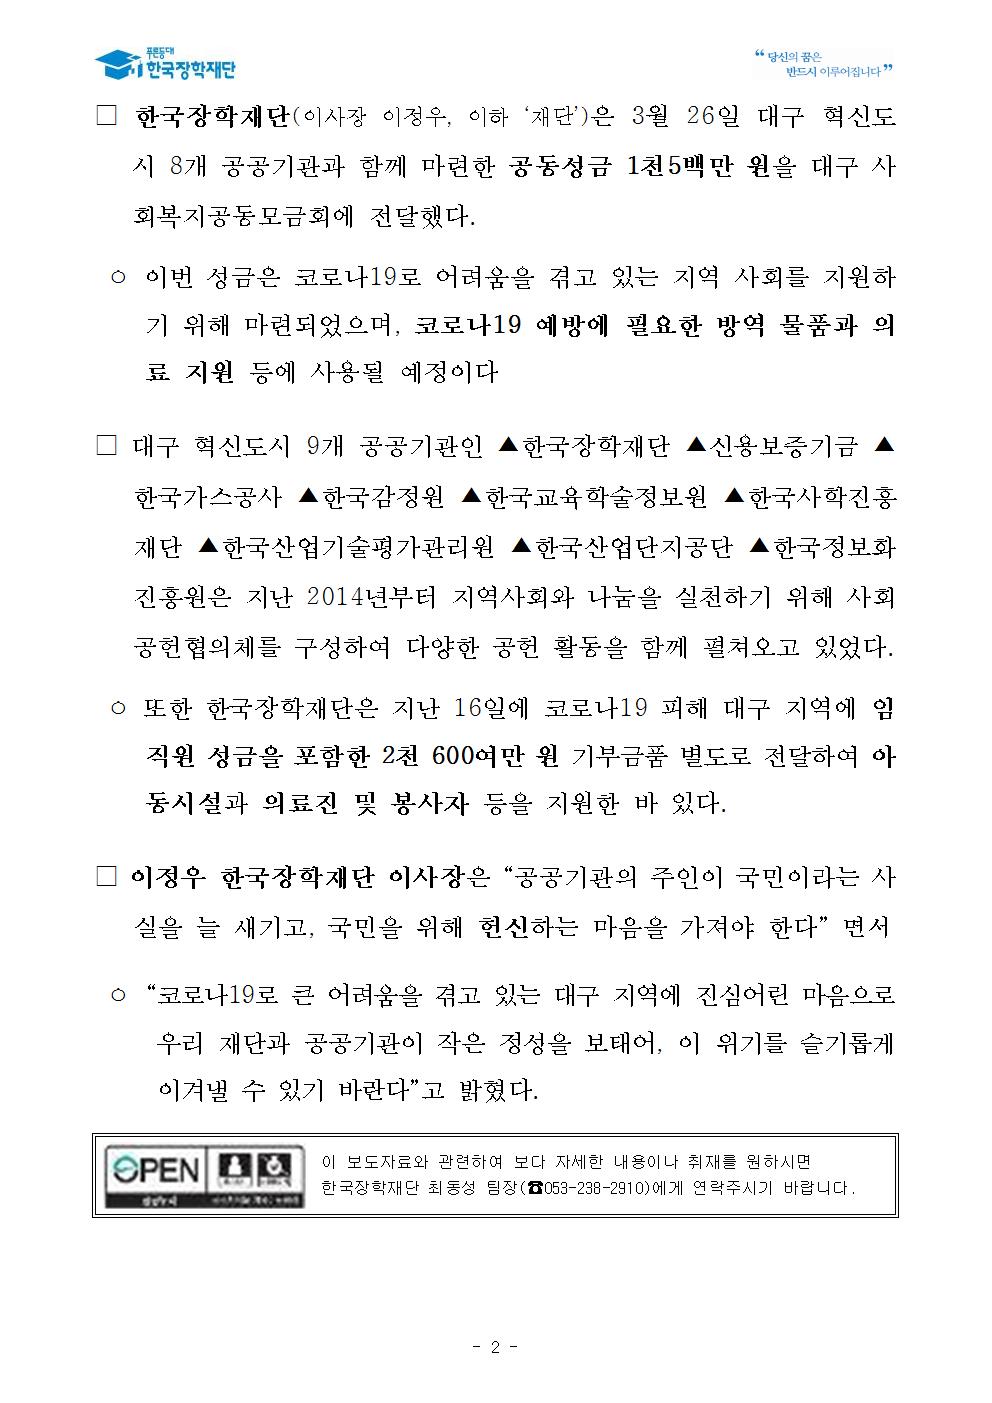 03-26(목)[보도자료] 한국장학재단 코로나19 극복을 위한 공동성금 1,500만 원 전달002.jpg